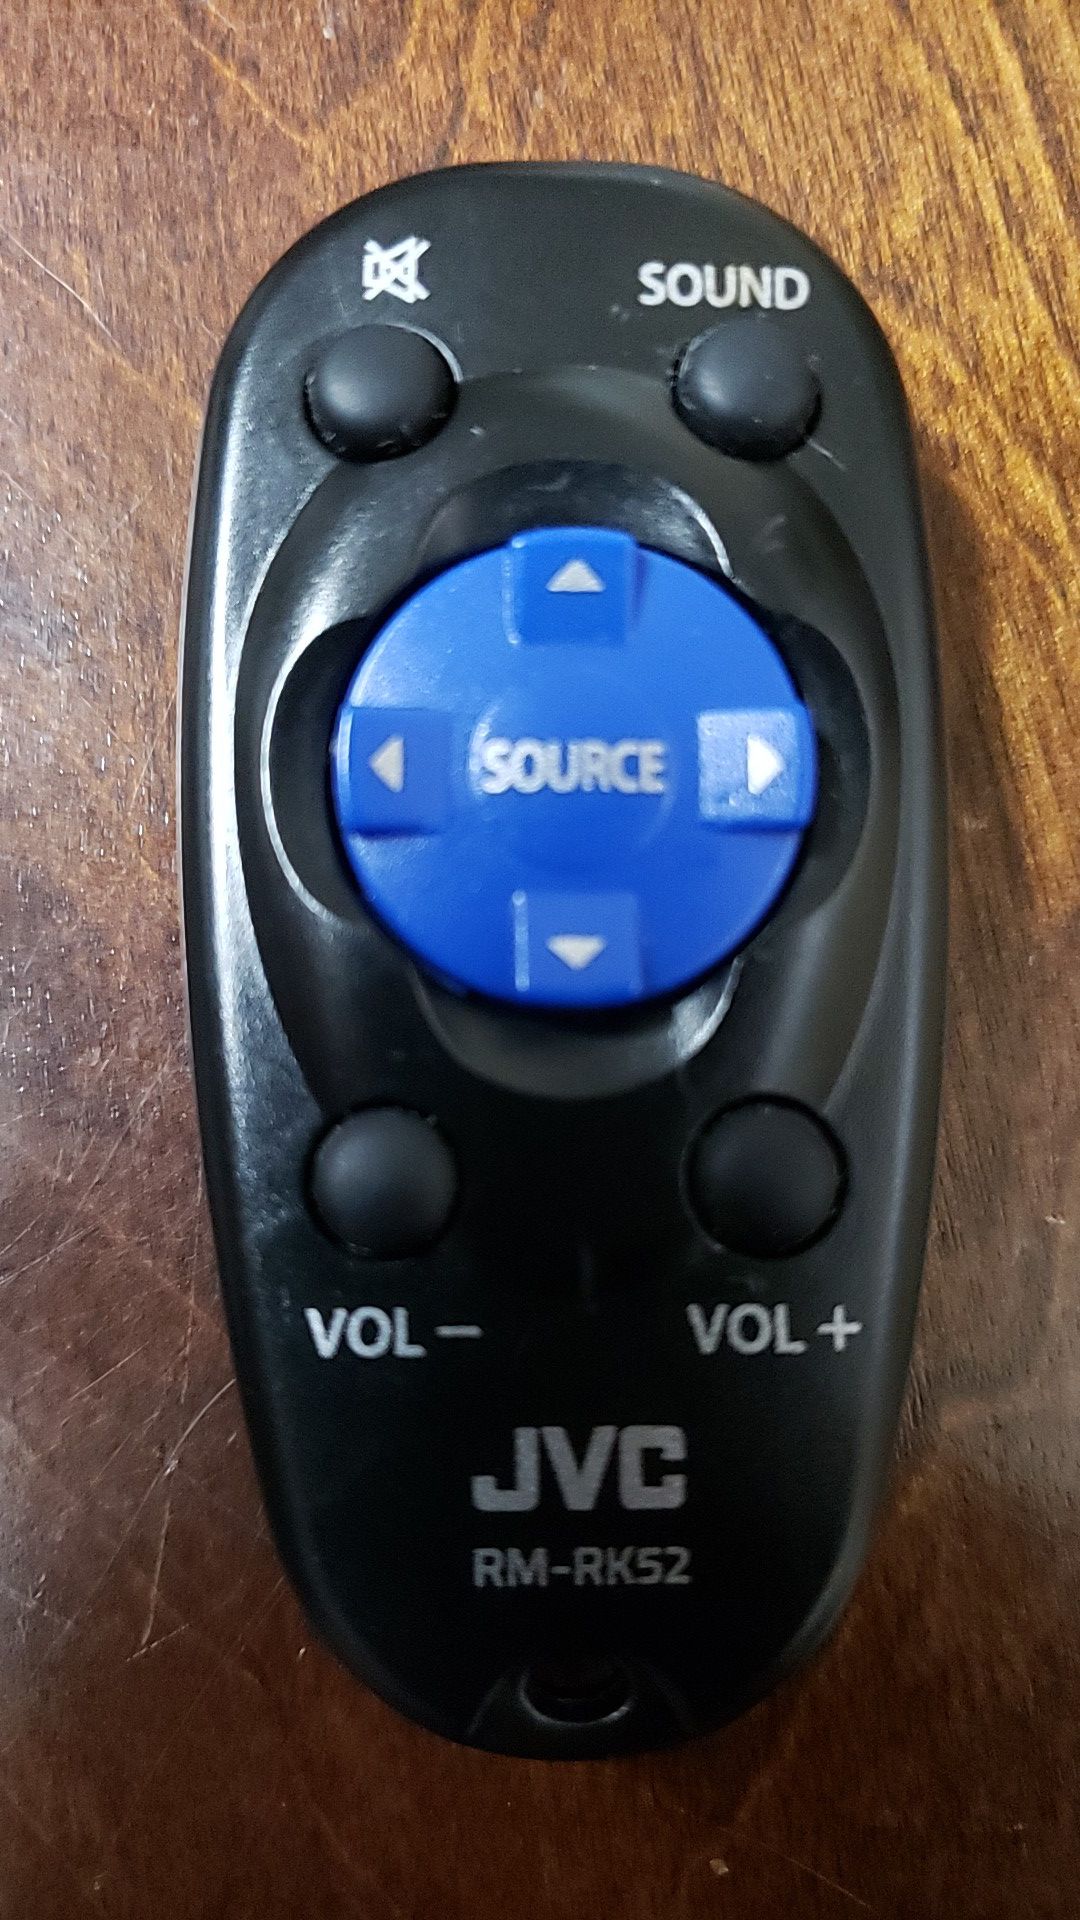 JVC RM-RK52 Remote Control for Car in-dash Radio